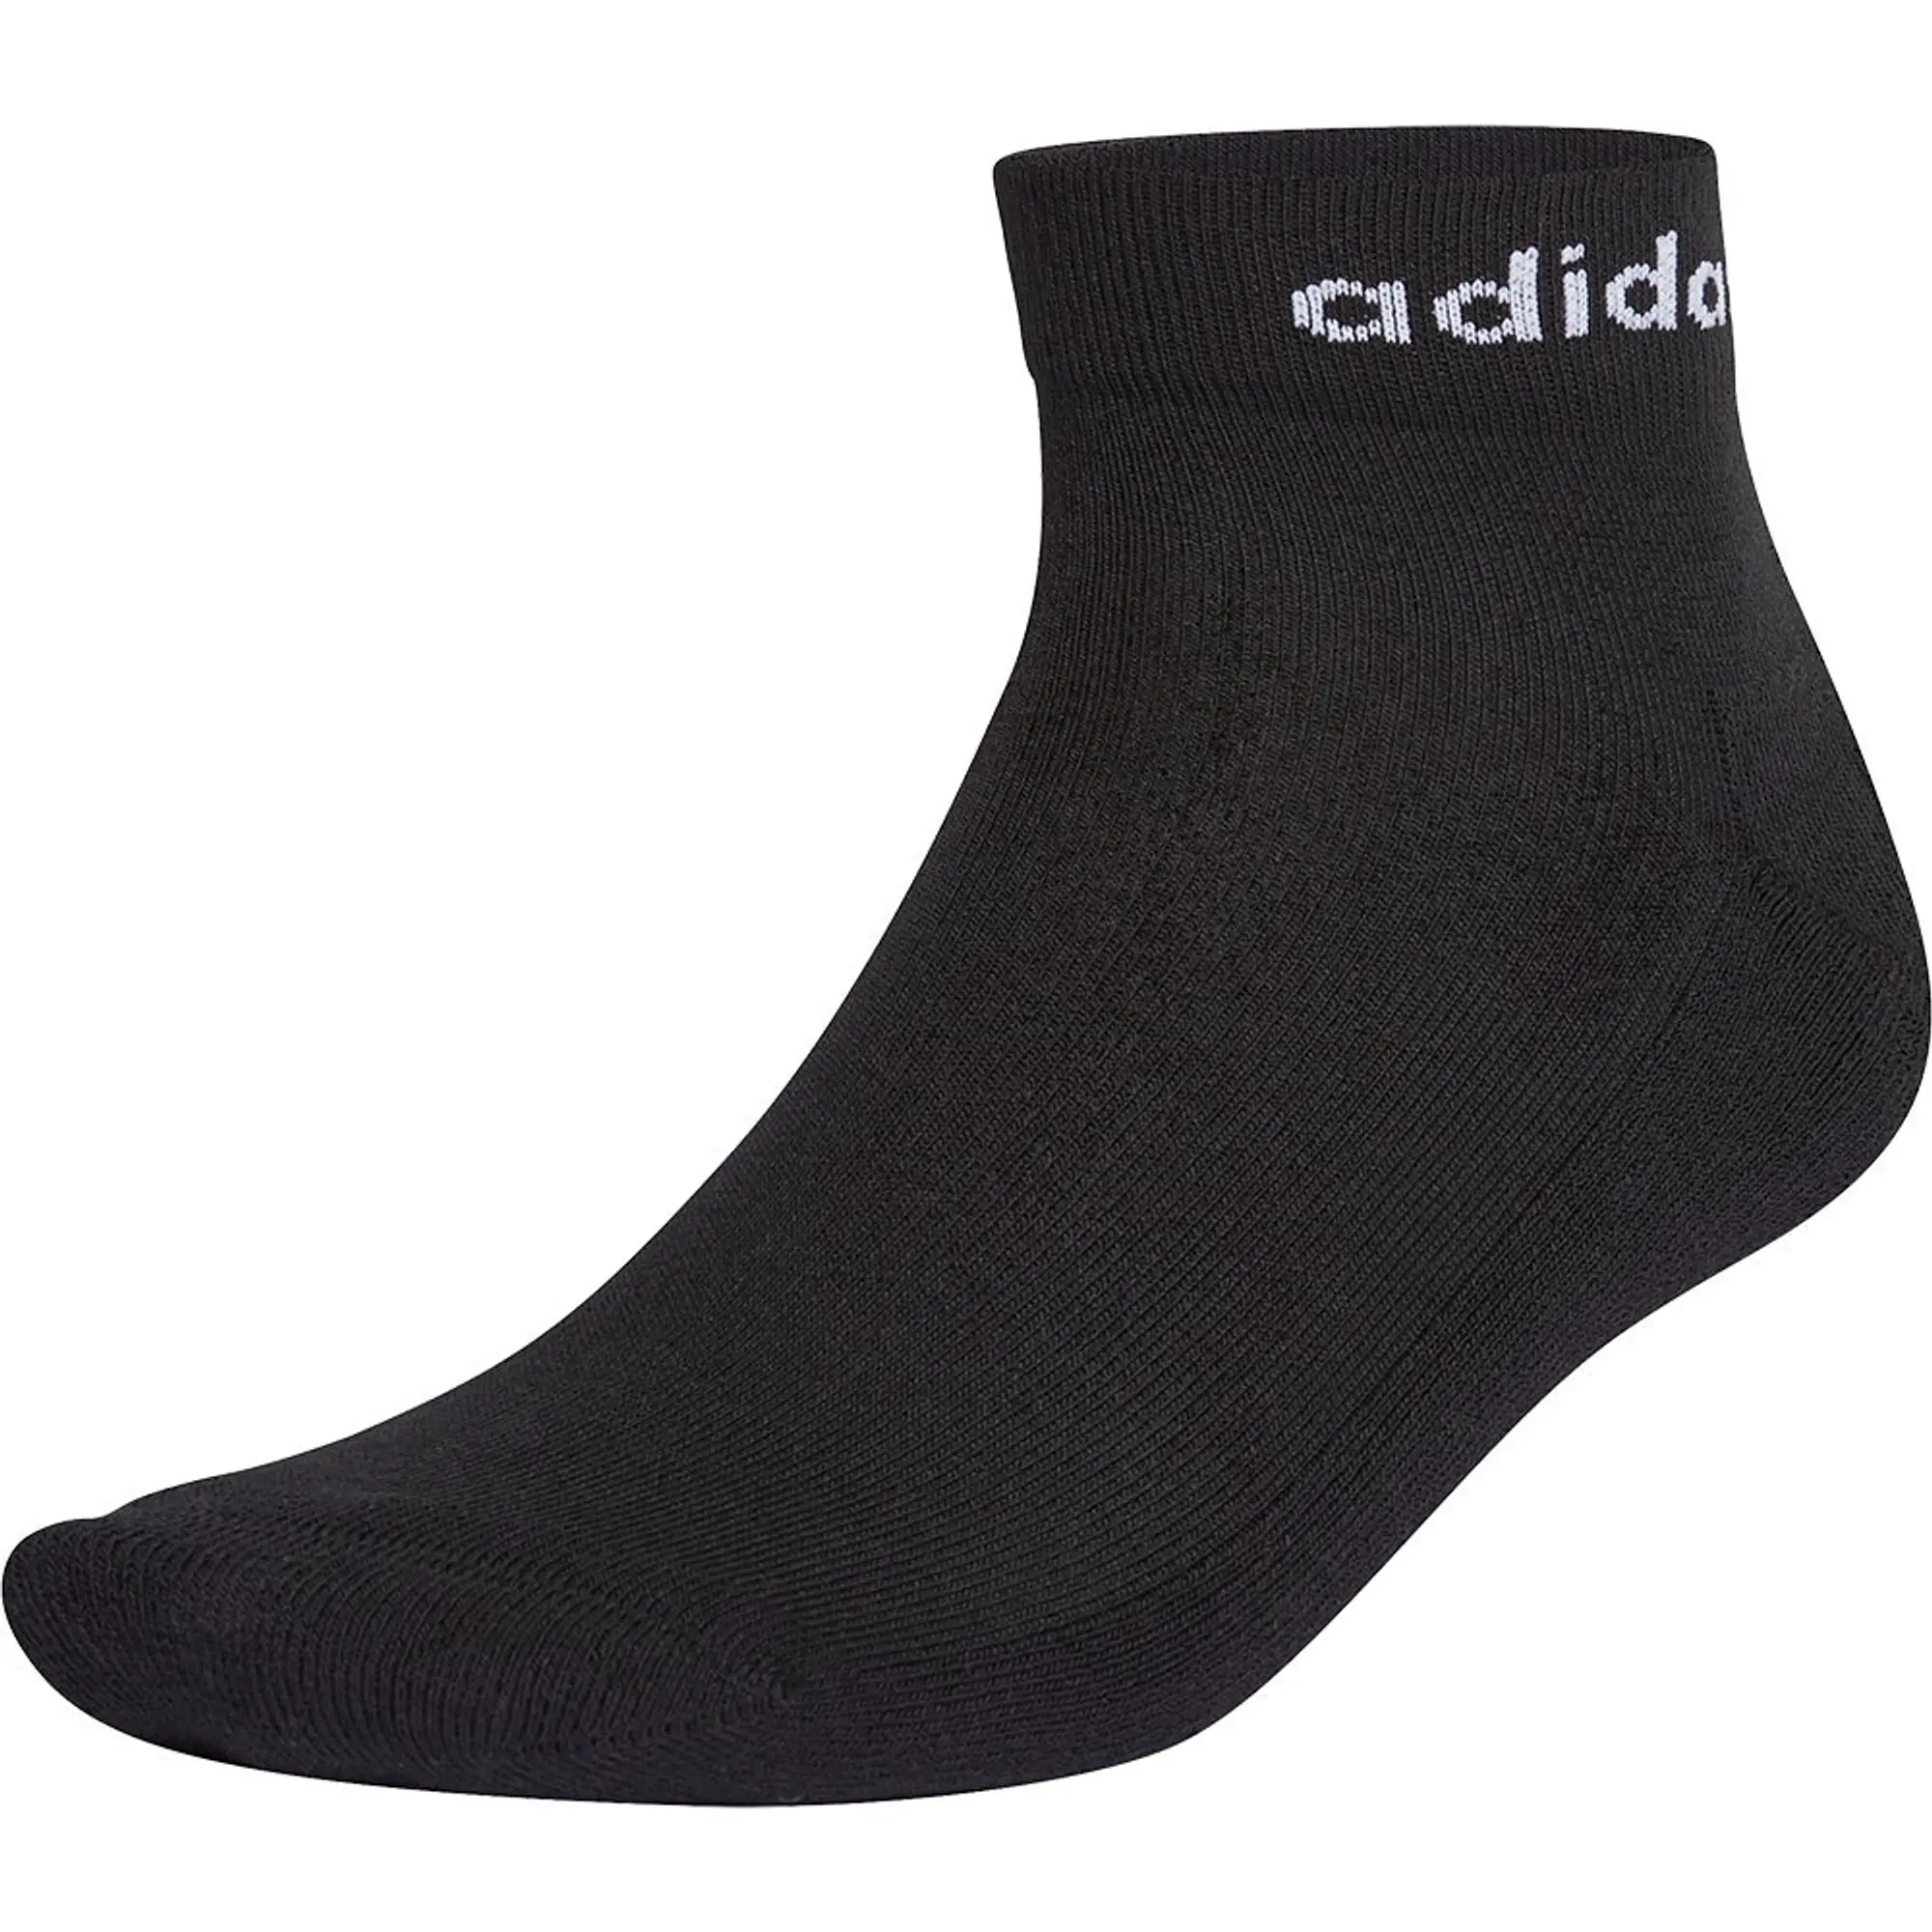 Adidas Hc Ankle Socks 3 Pairs  - Black